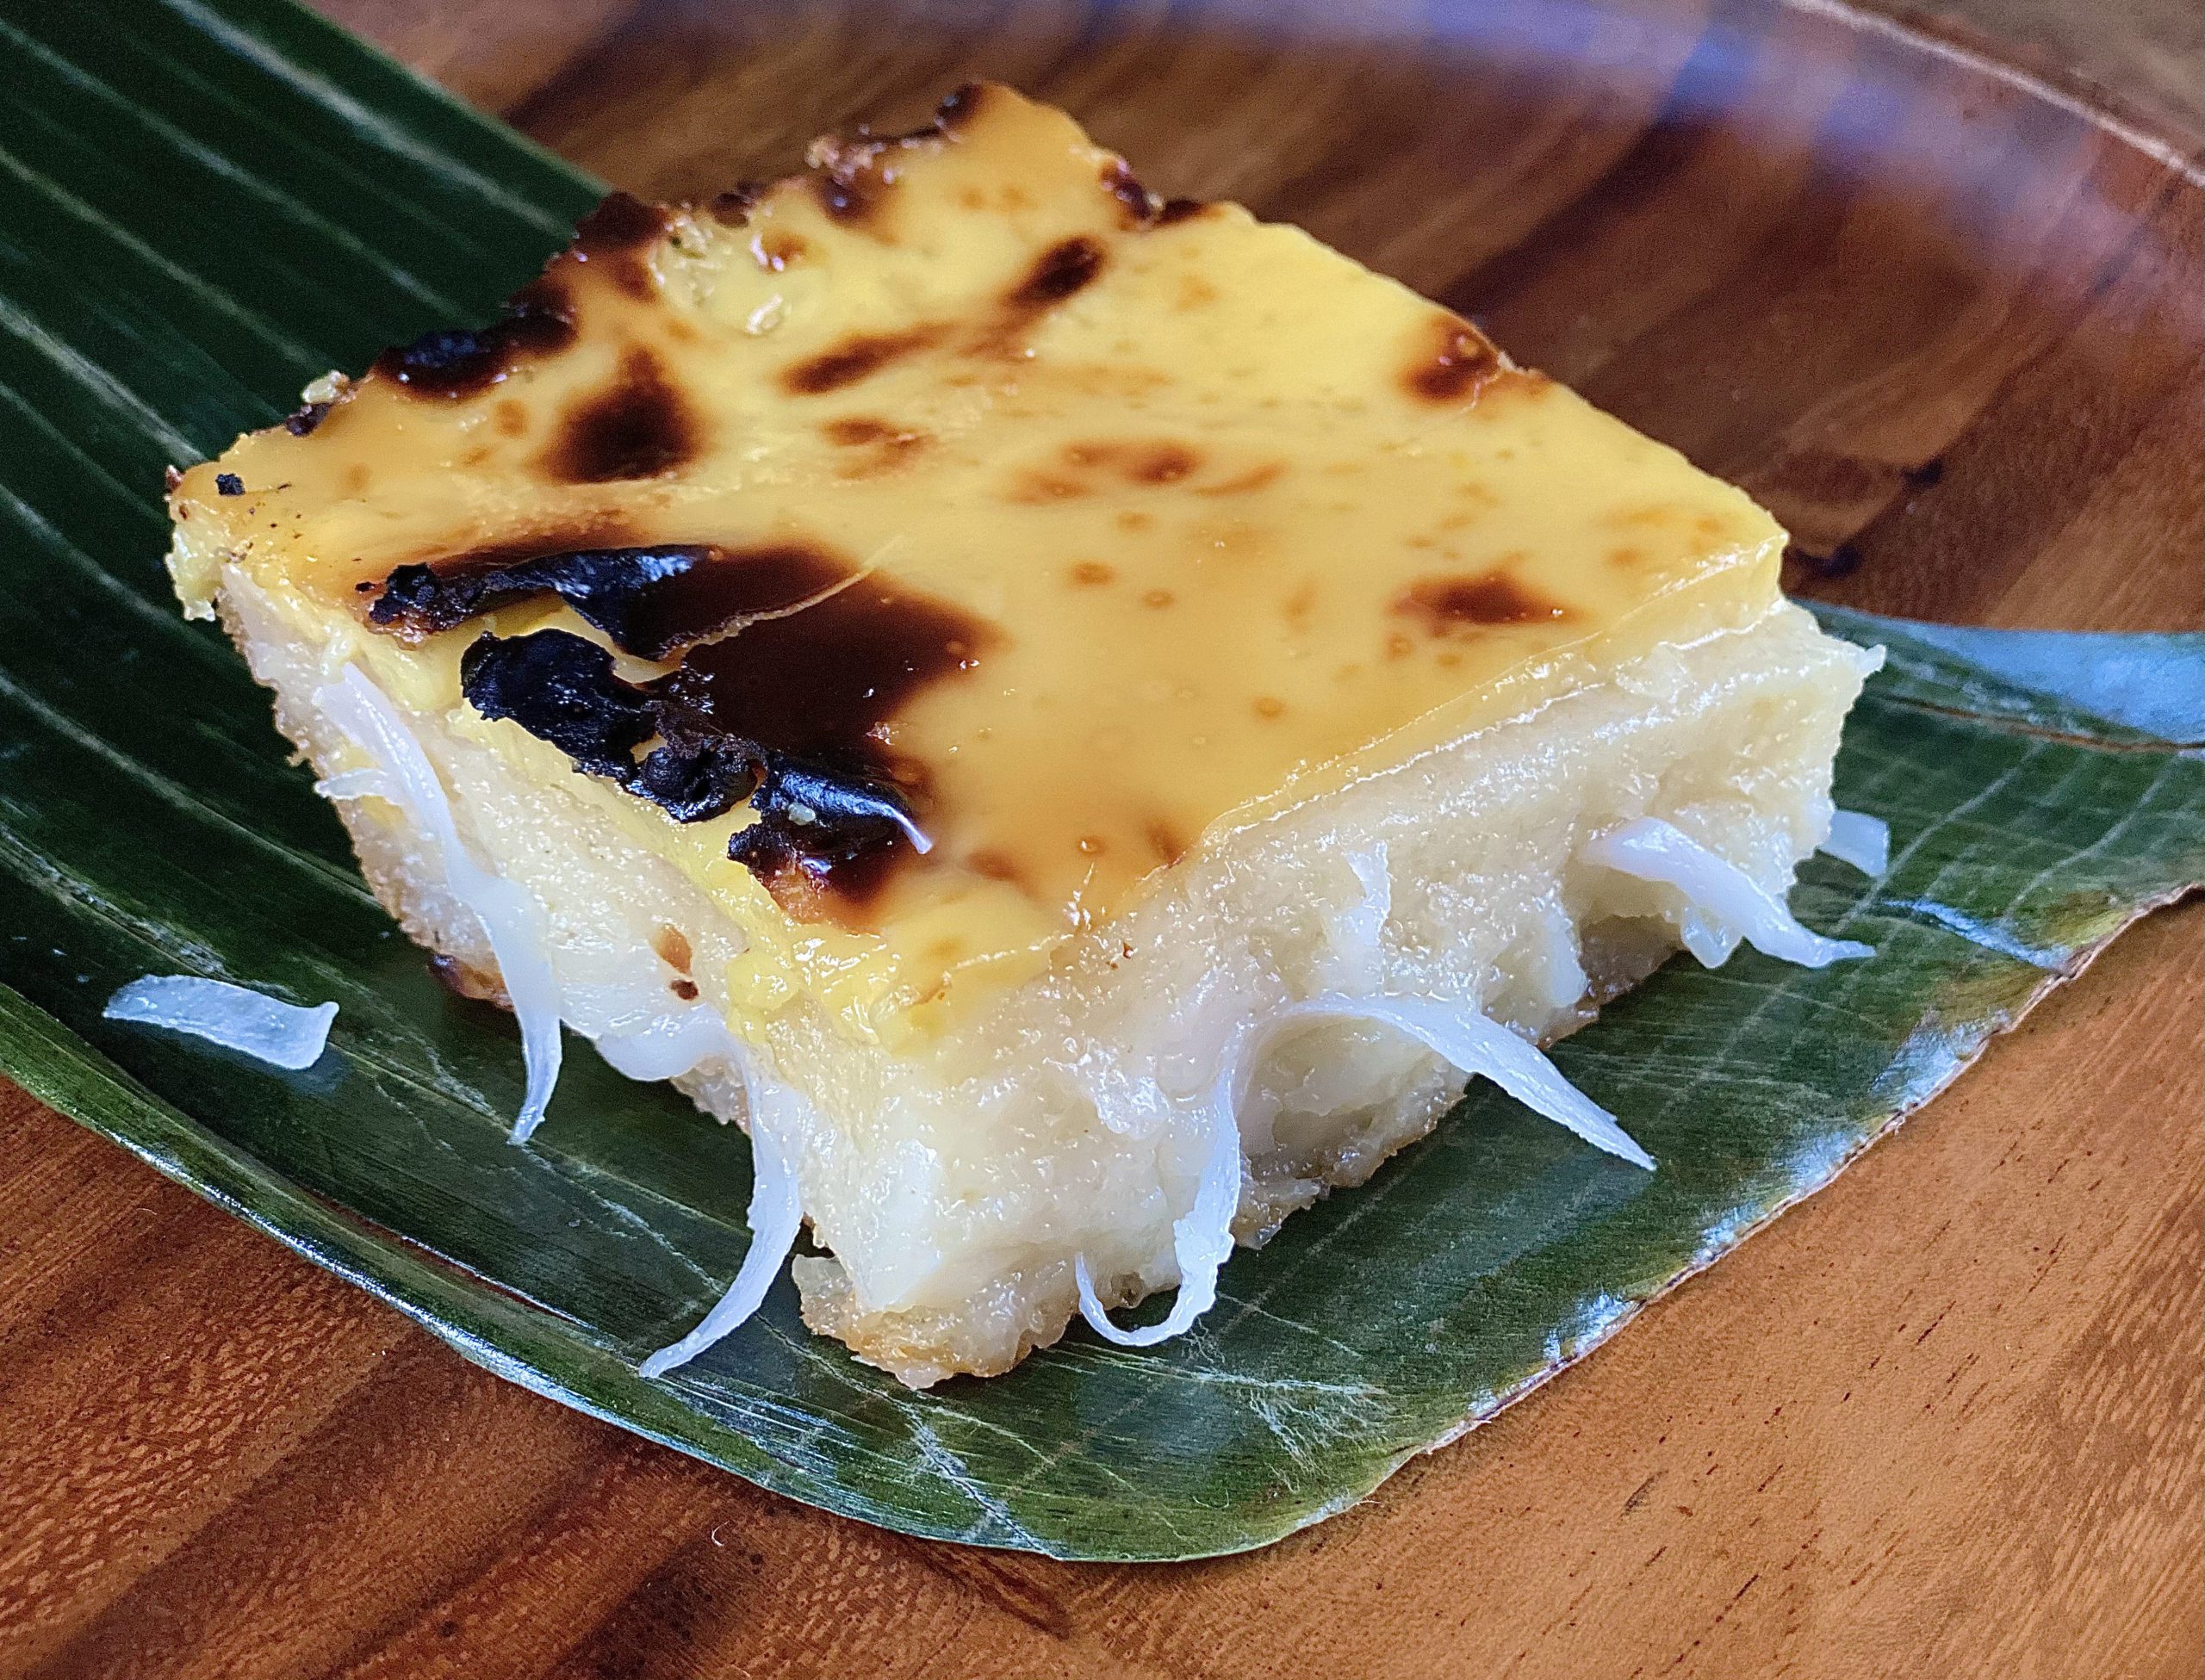 Traditional Filipino Cassava Cake » Hummingbird High